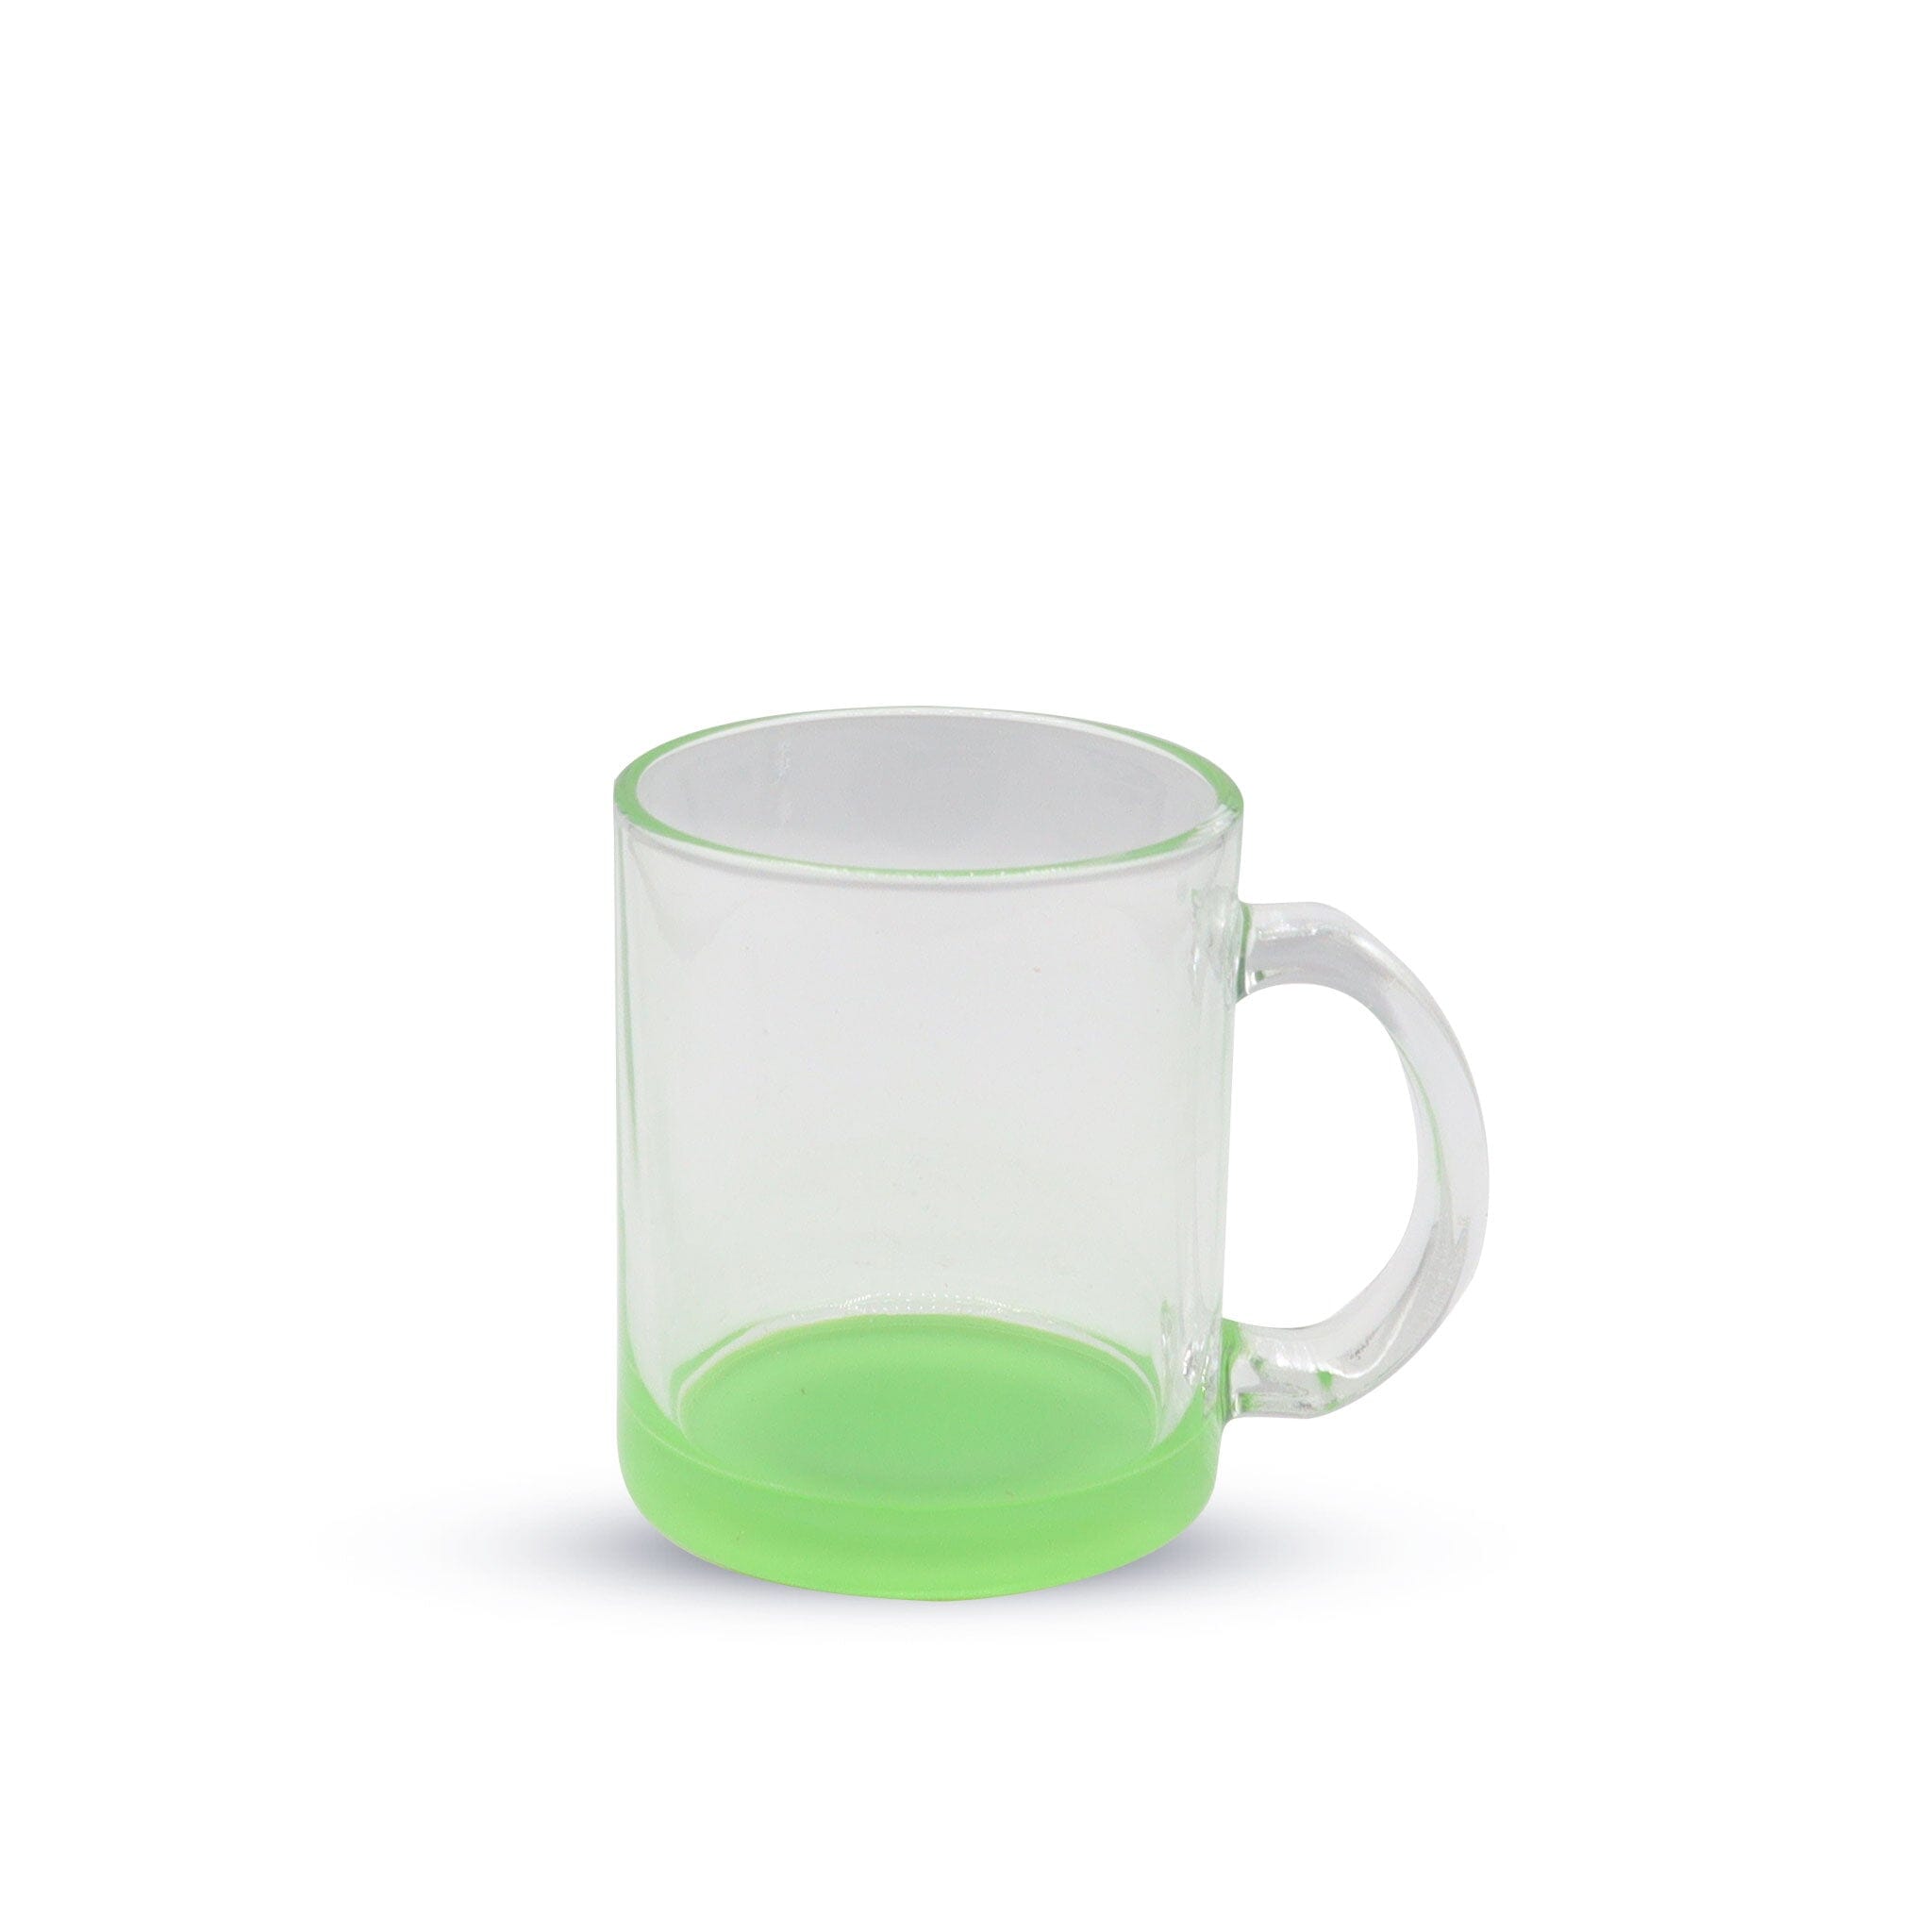 https://www.kupresso.com/cdn/shop/products/11oz-sublimation-glass-camper-mug-clear-kupresso-green-216775.jpg?v=1696255311